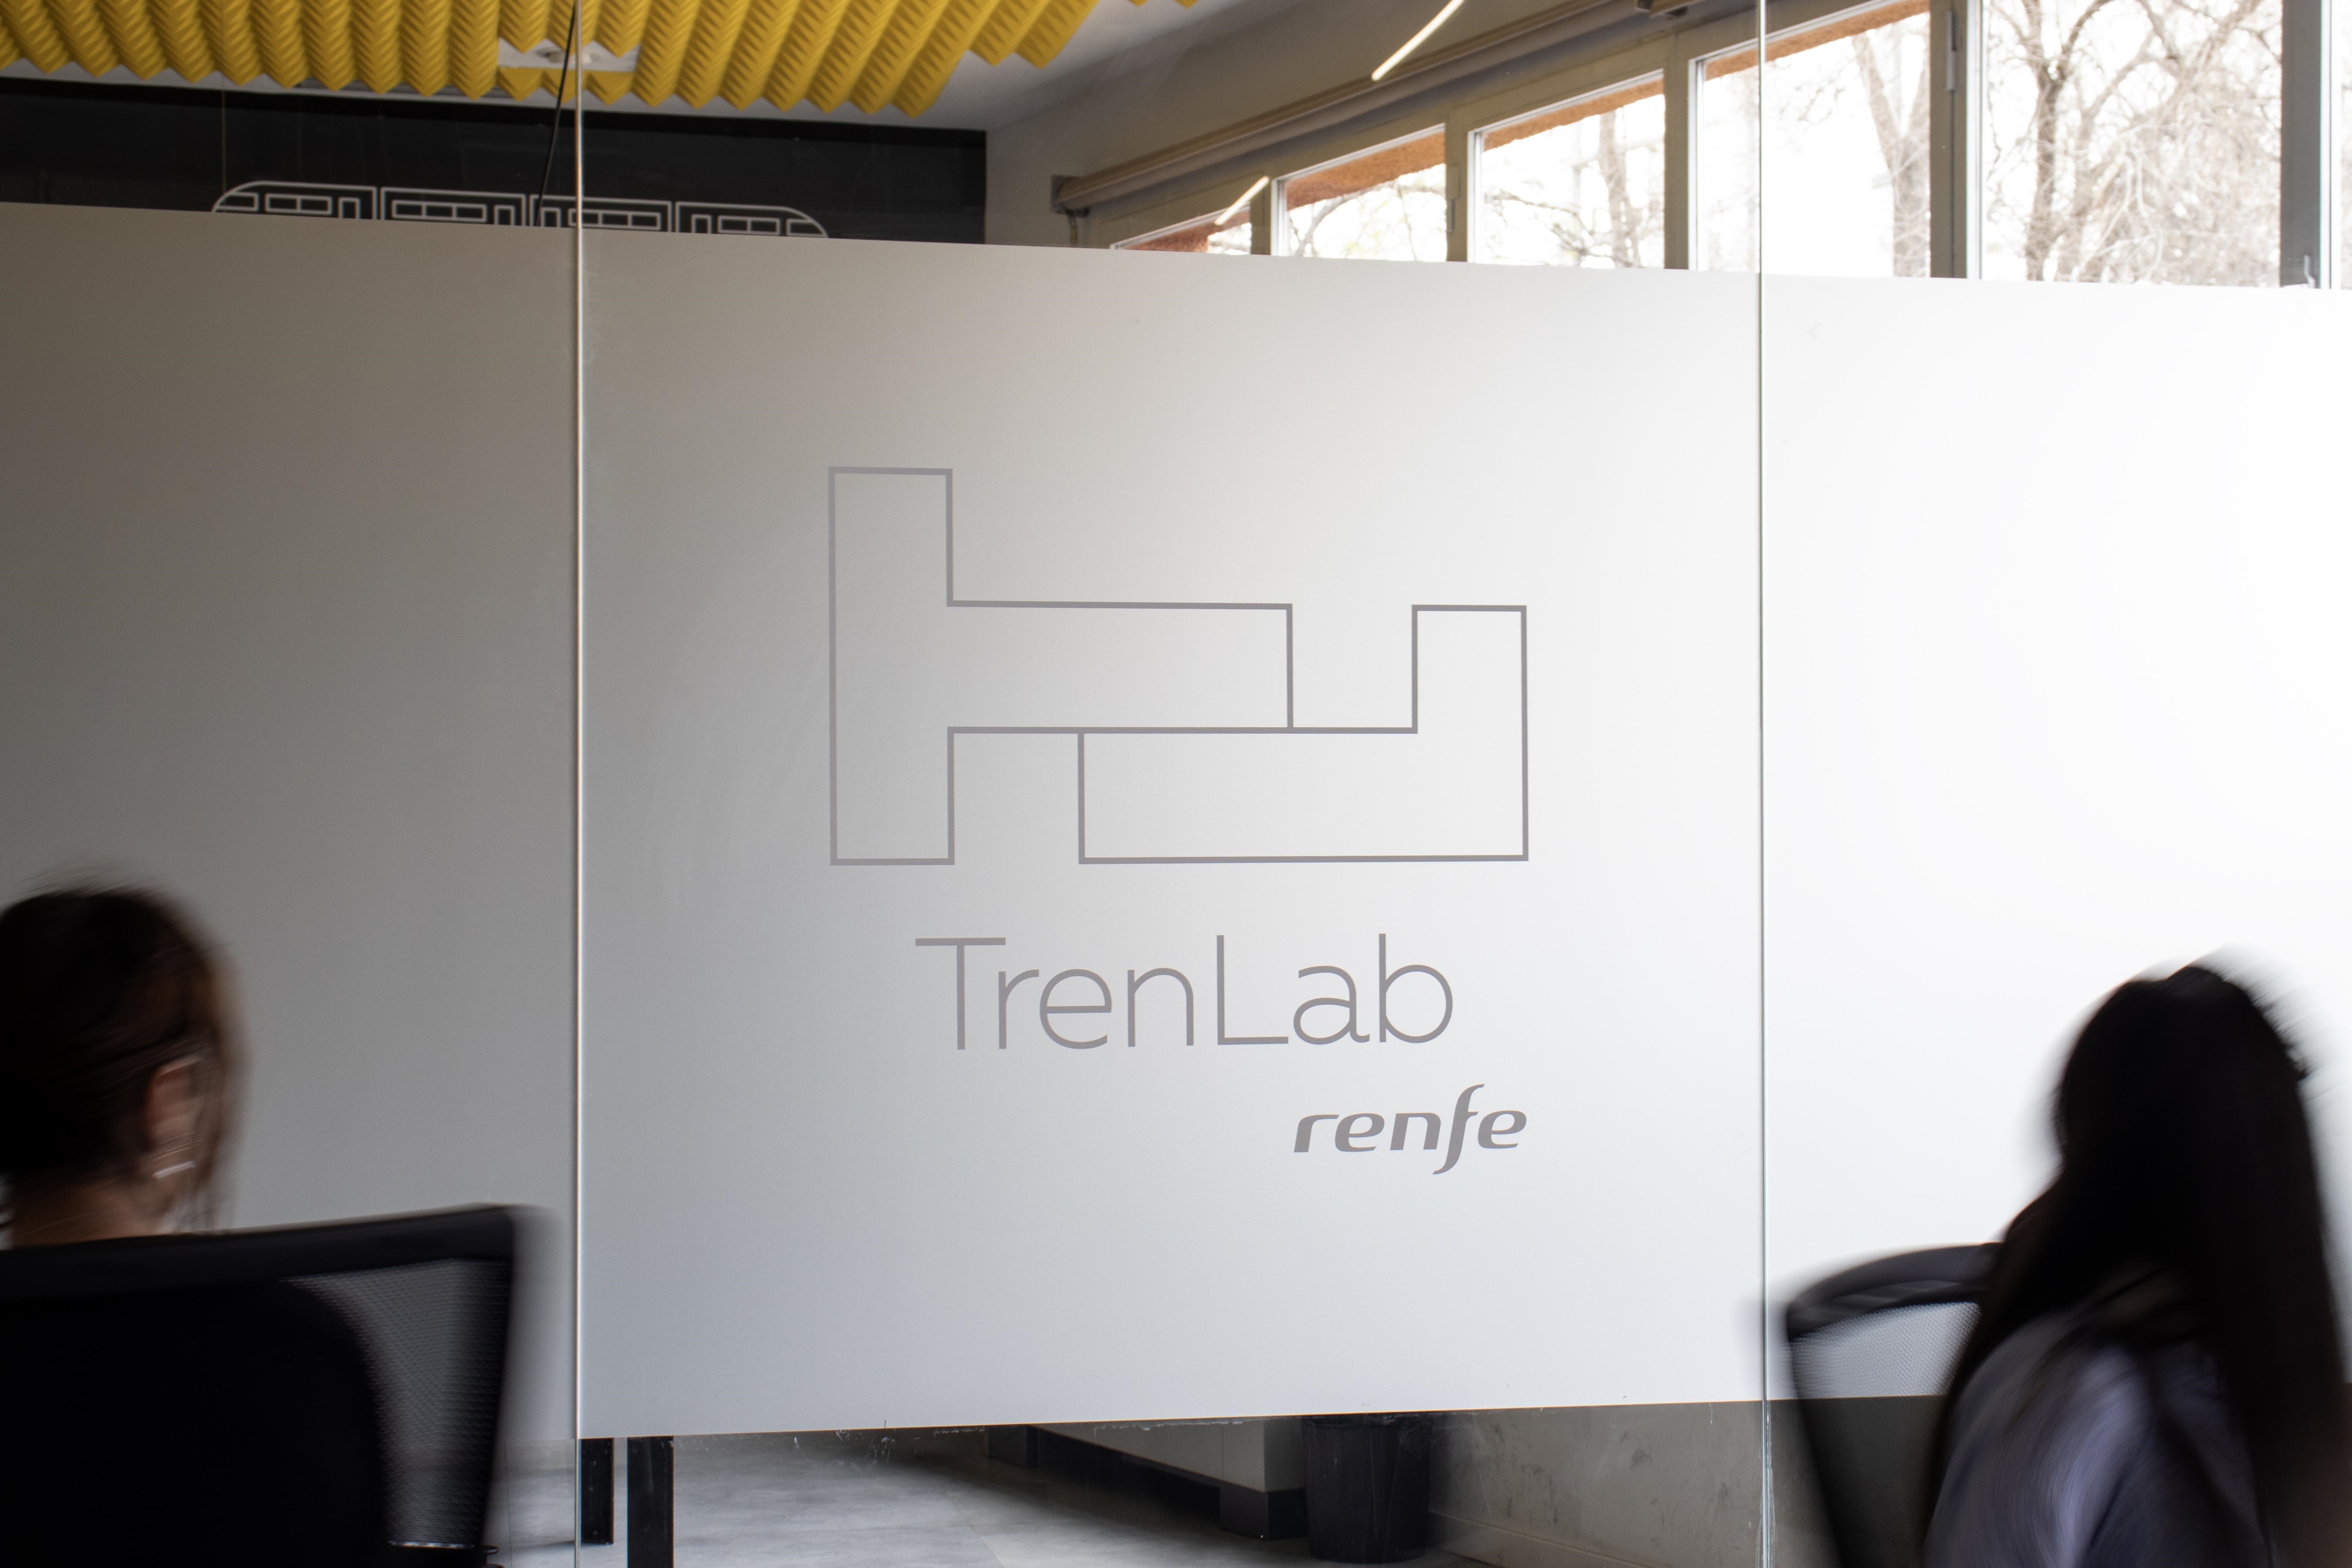 Innovació, al tren: embarquen els cinc projectes a TrenLab, l'acceleradora de start-ups de Renfe